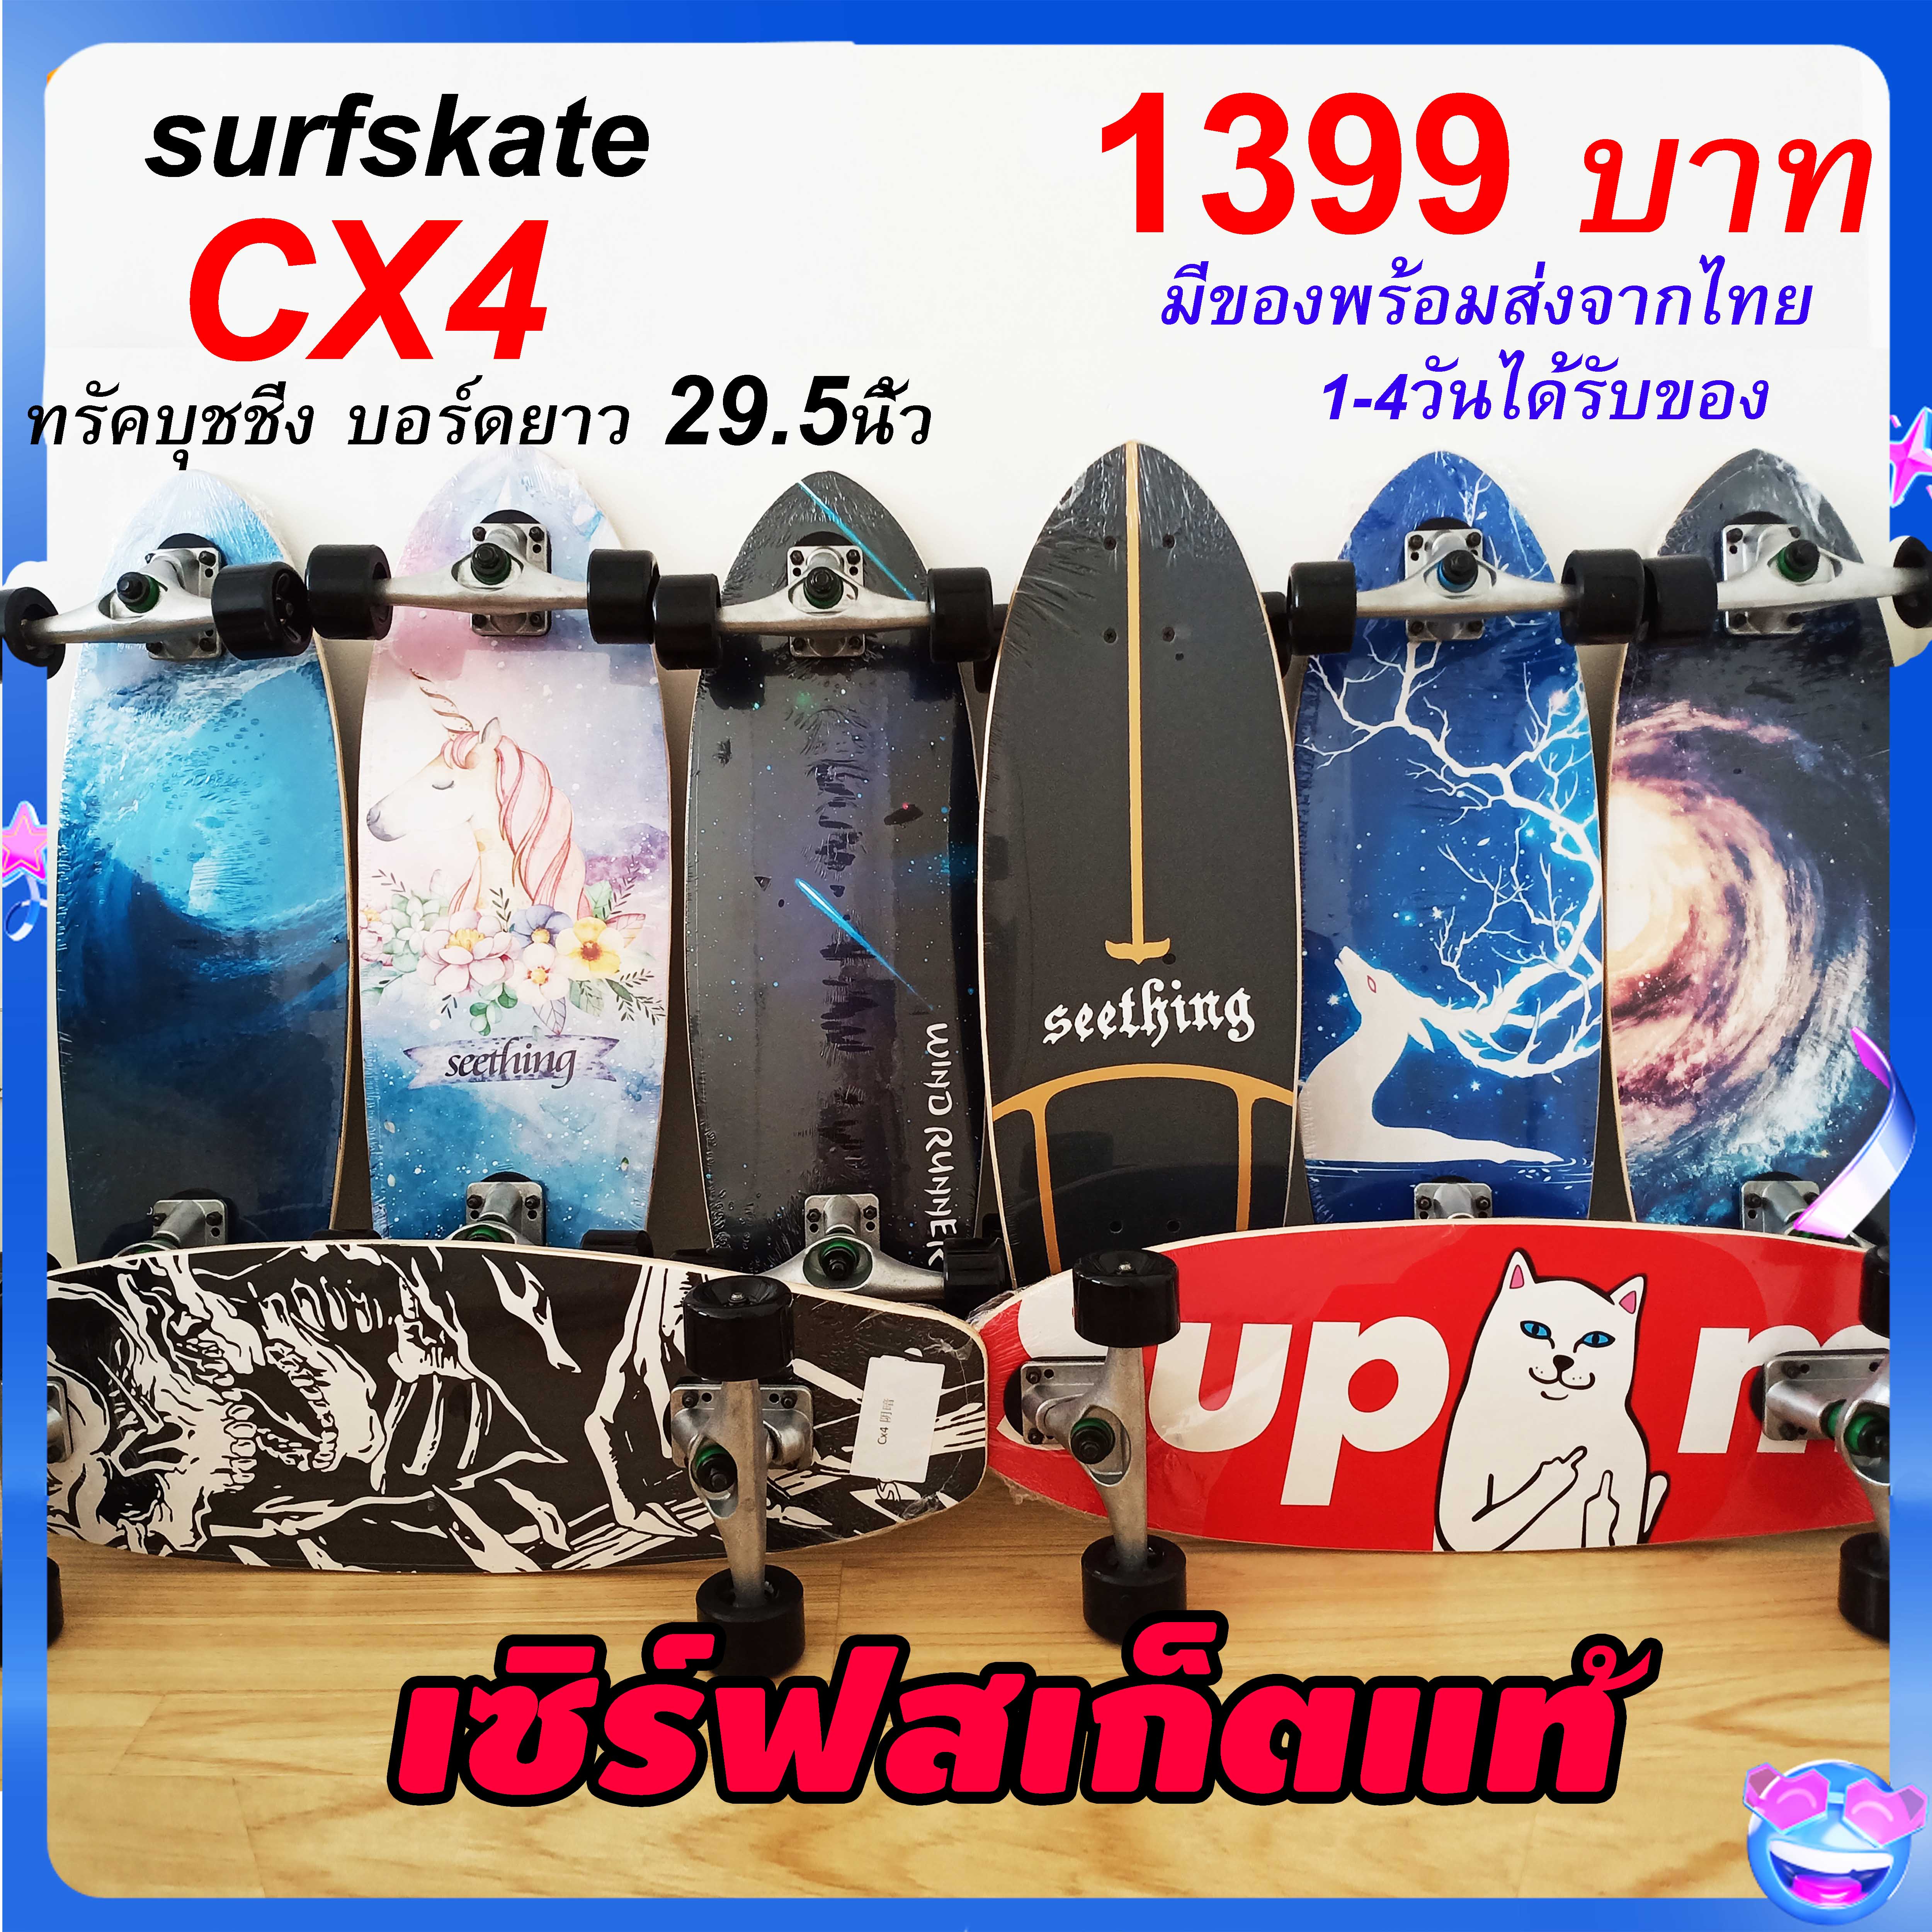 เซิร์ฟสเก็ต surfskate CX4 แต่งบุช 85a+ยางรองทรัค surf skateพร้อมส่งจากไทย seething 29.5นิ้ว เซิร์ฟสเก็ตบอร์ด สเก็ตบอร์ด skateboard เซิร์ฟสเก็ตใหม่